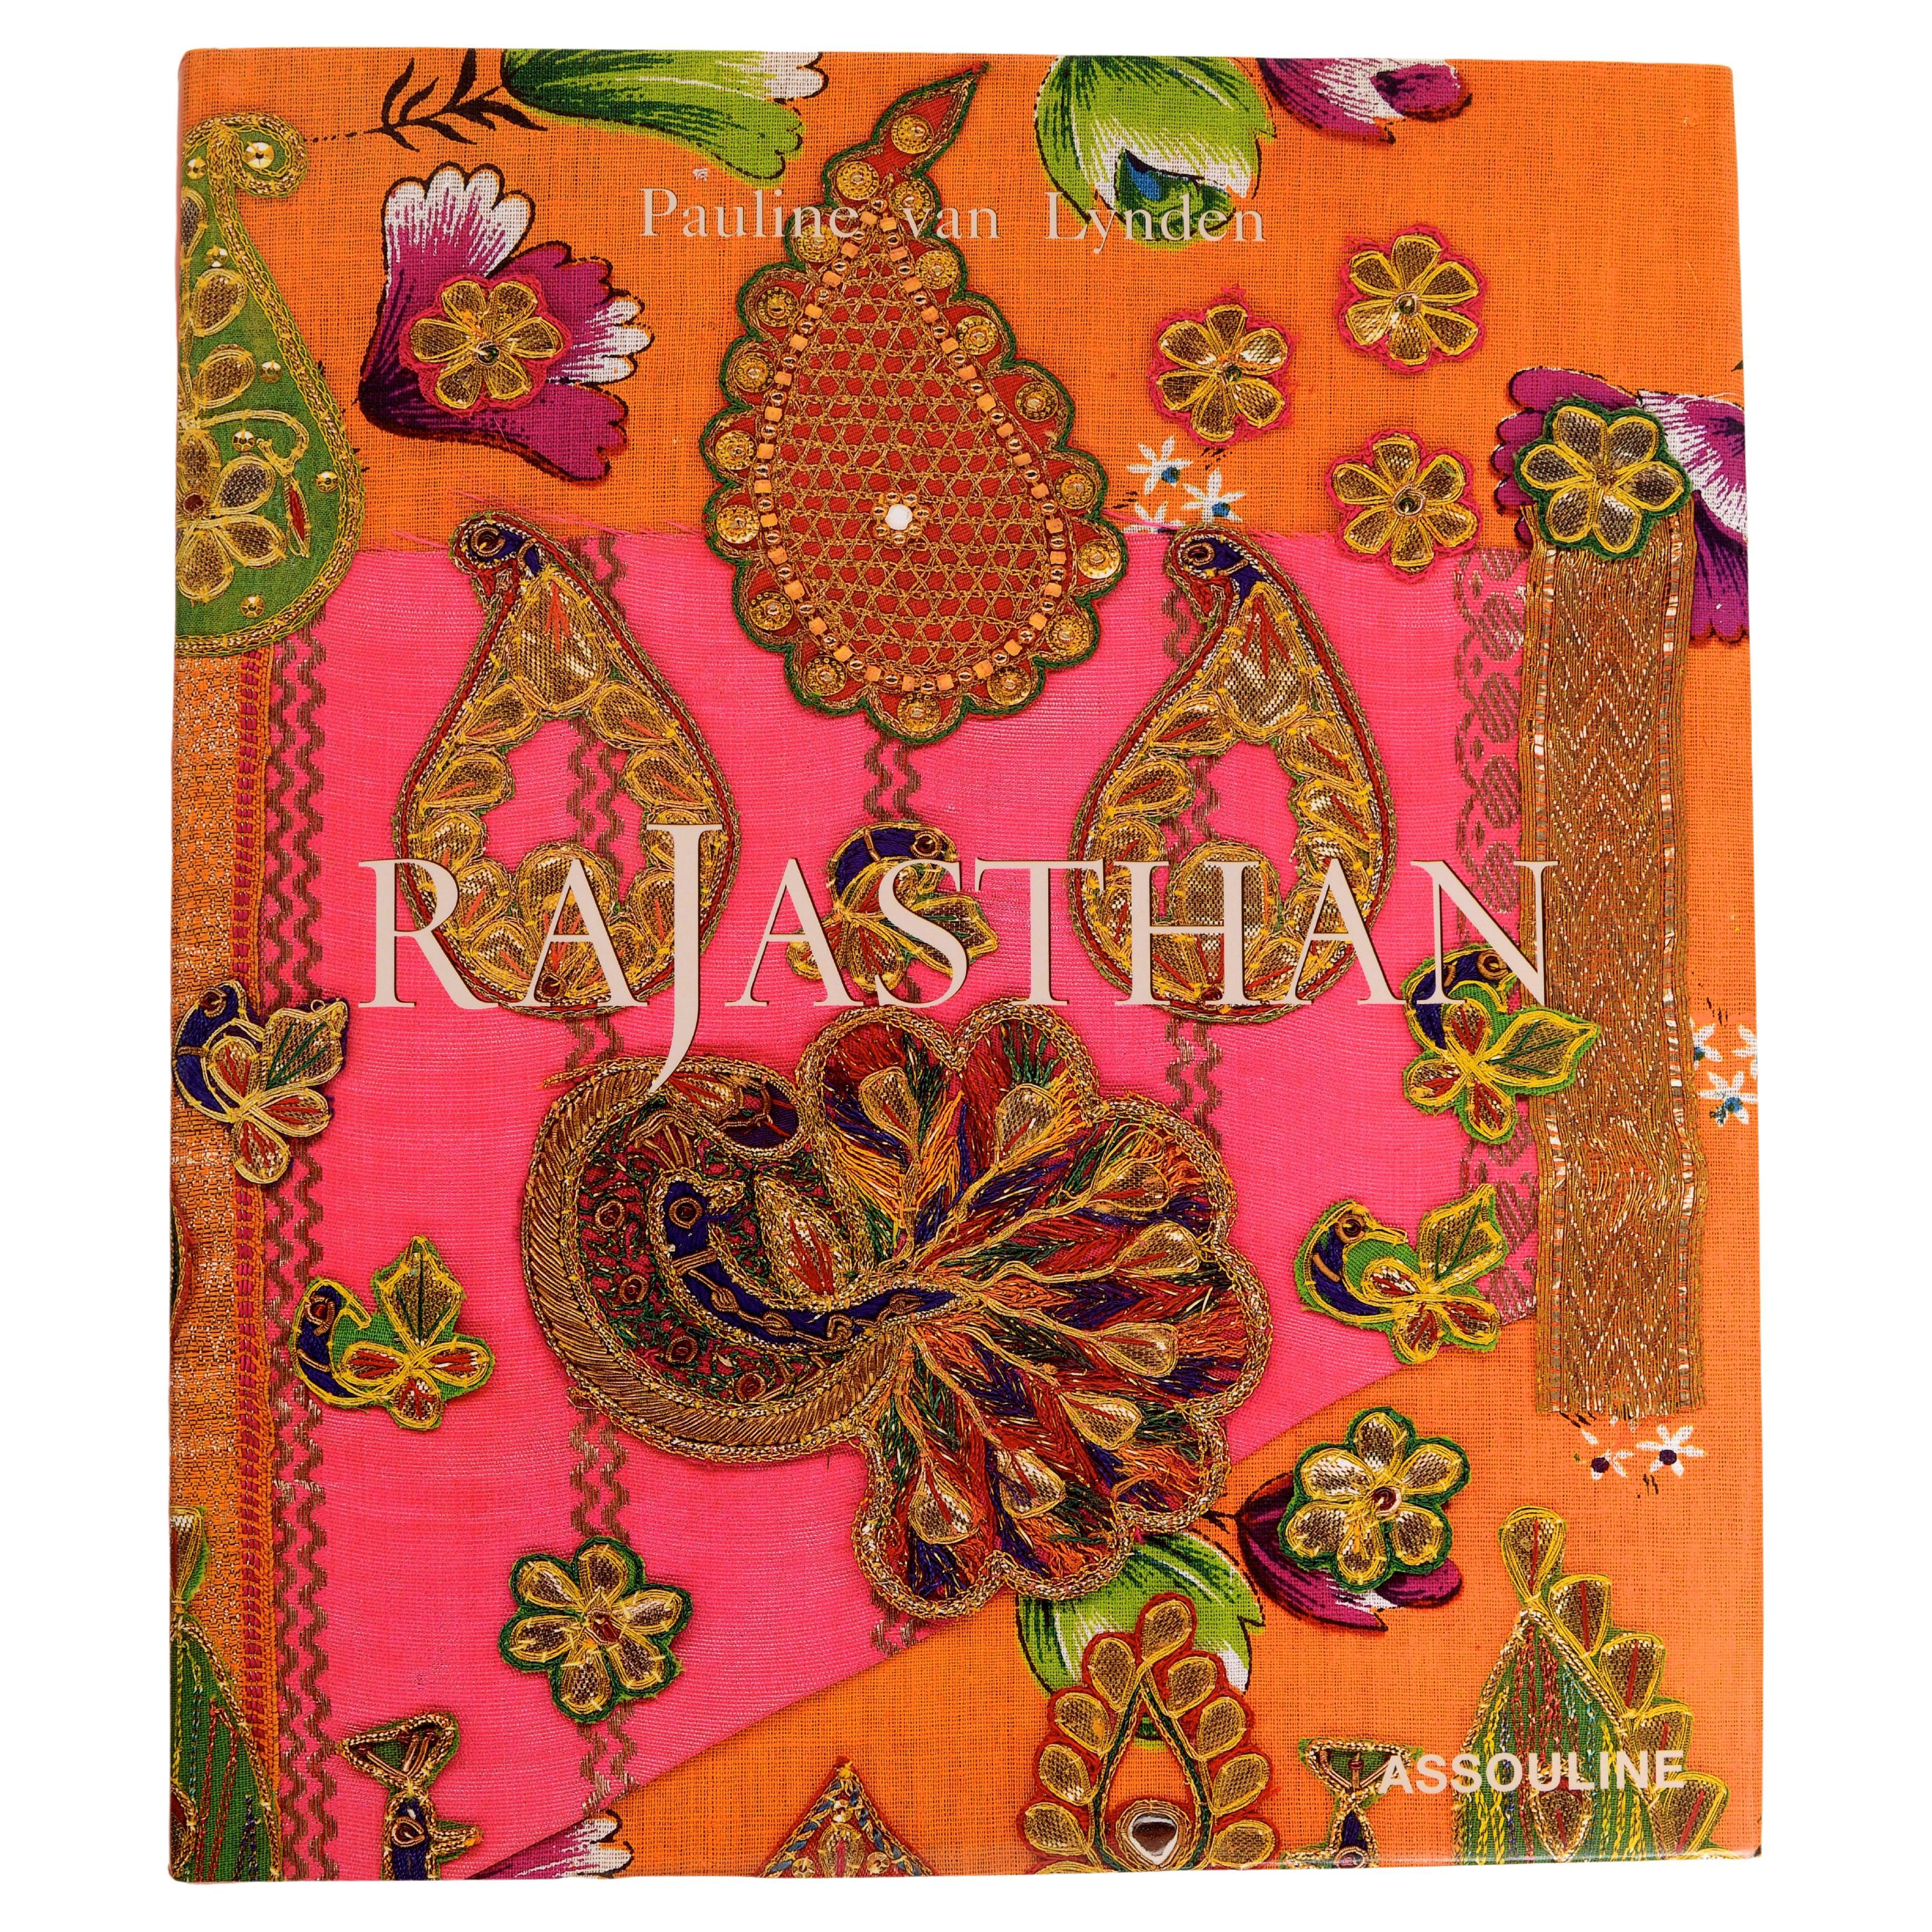 Le Rajasthan de Pauline Van Lynden, 1ère édition